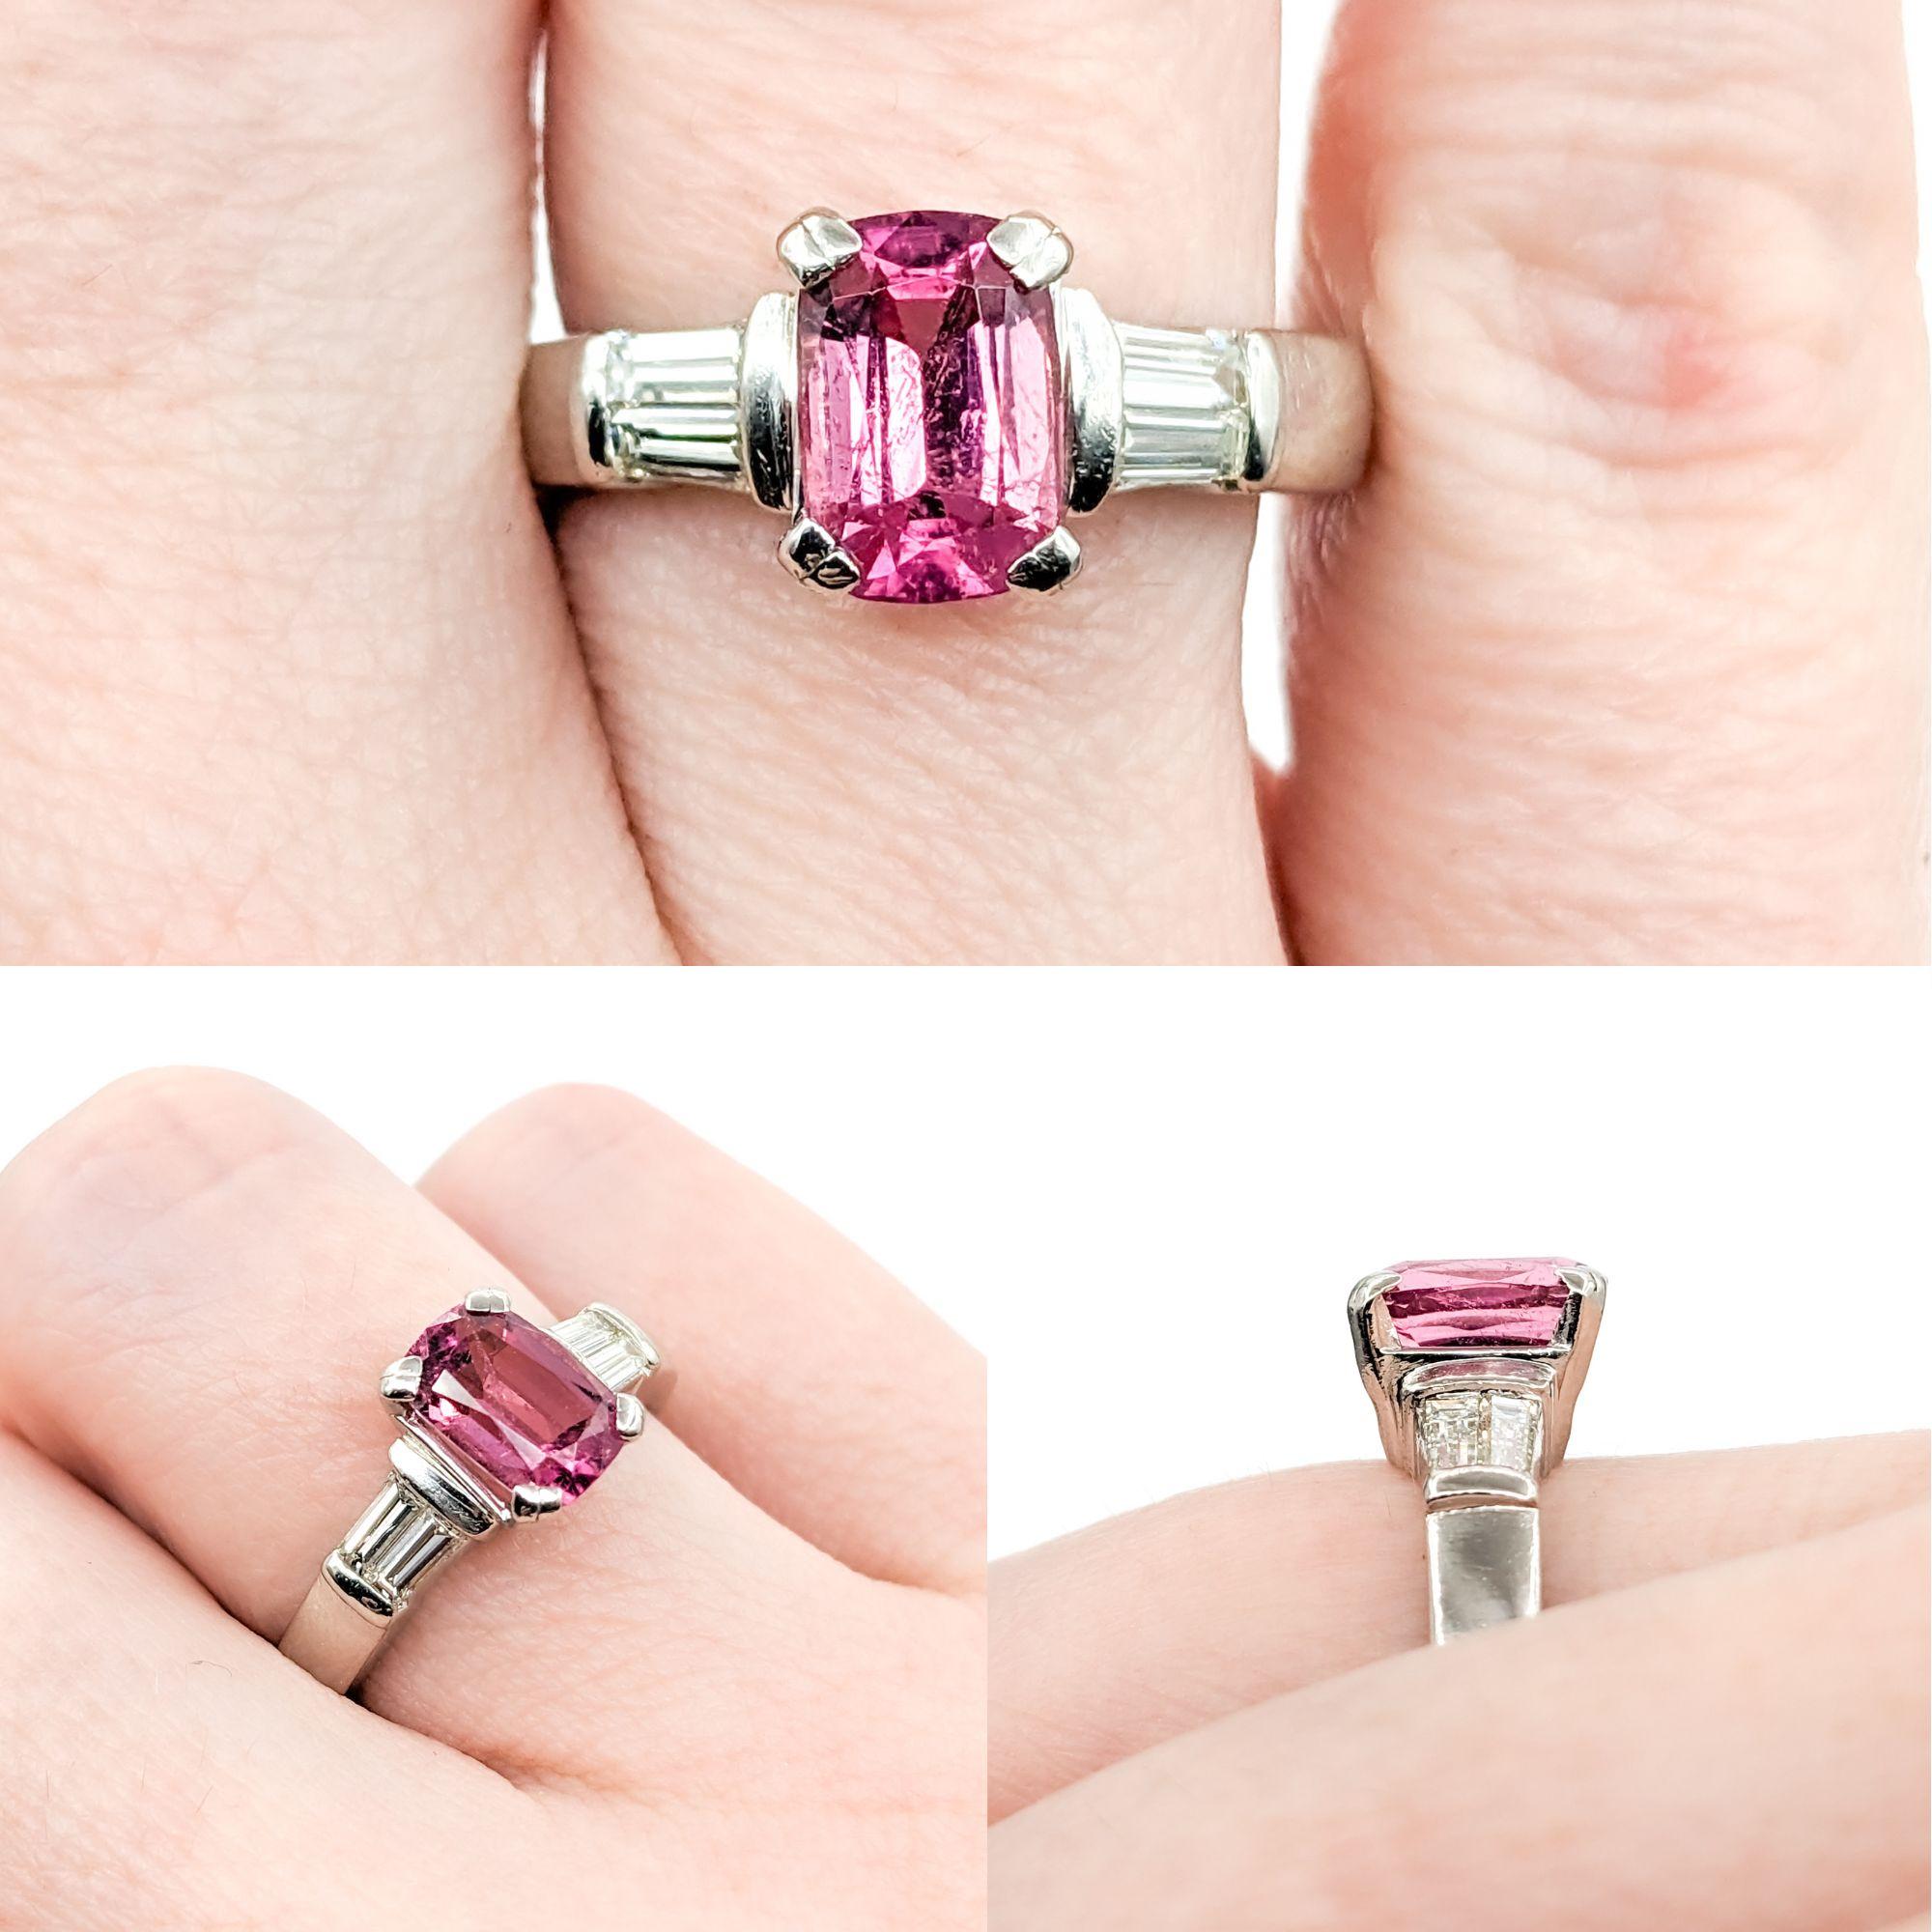 Rosa Turmalin & Baguette-Diamant-Ring aus Platin

Dieser wunderschöne Ring mit rosa Turmalin ist aus 950er Platin gefertigt und mit Baguette-Diamanten von 0,33 ct geschmückt. Der 1,35-karätige Turmalin hat eine satte rosa Farbe, die sich gut von den